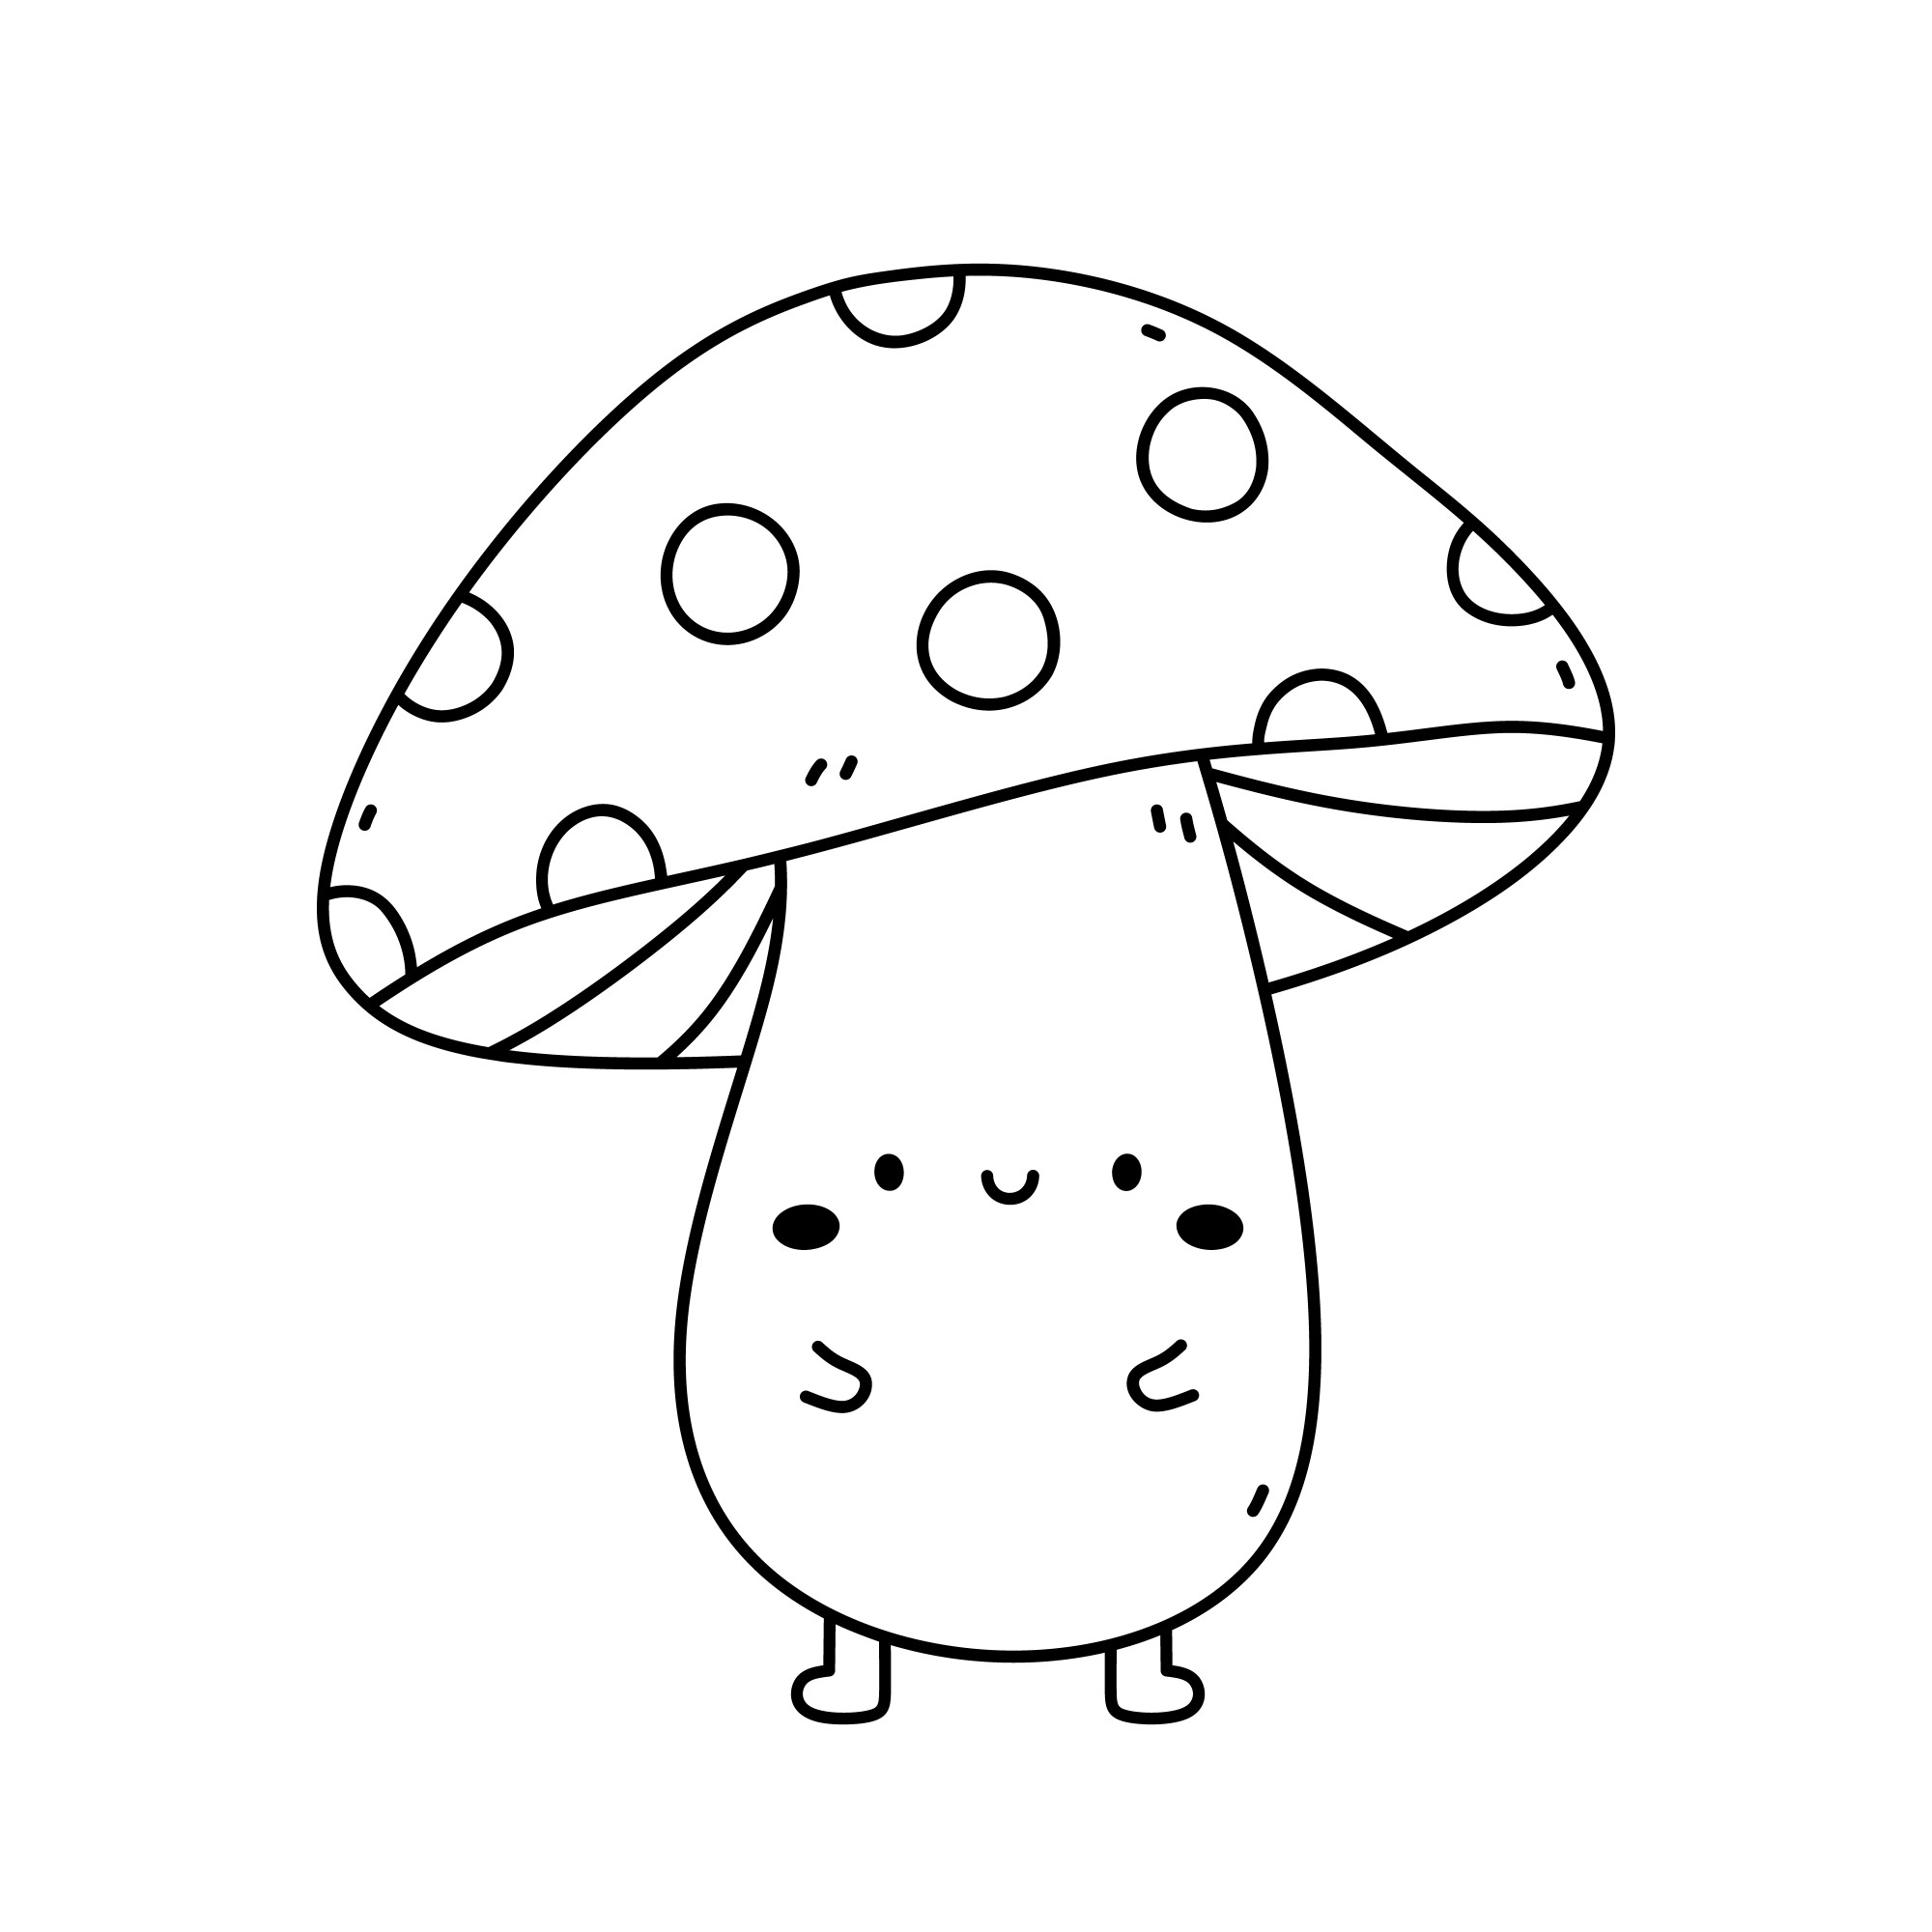 Раскраска для детей: веселый гриб